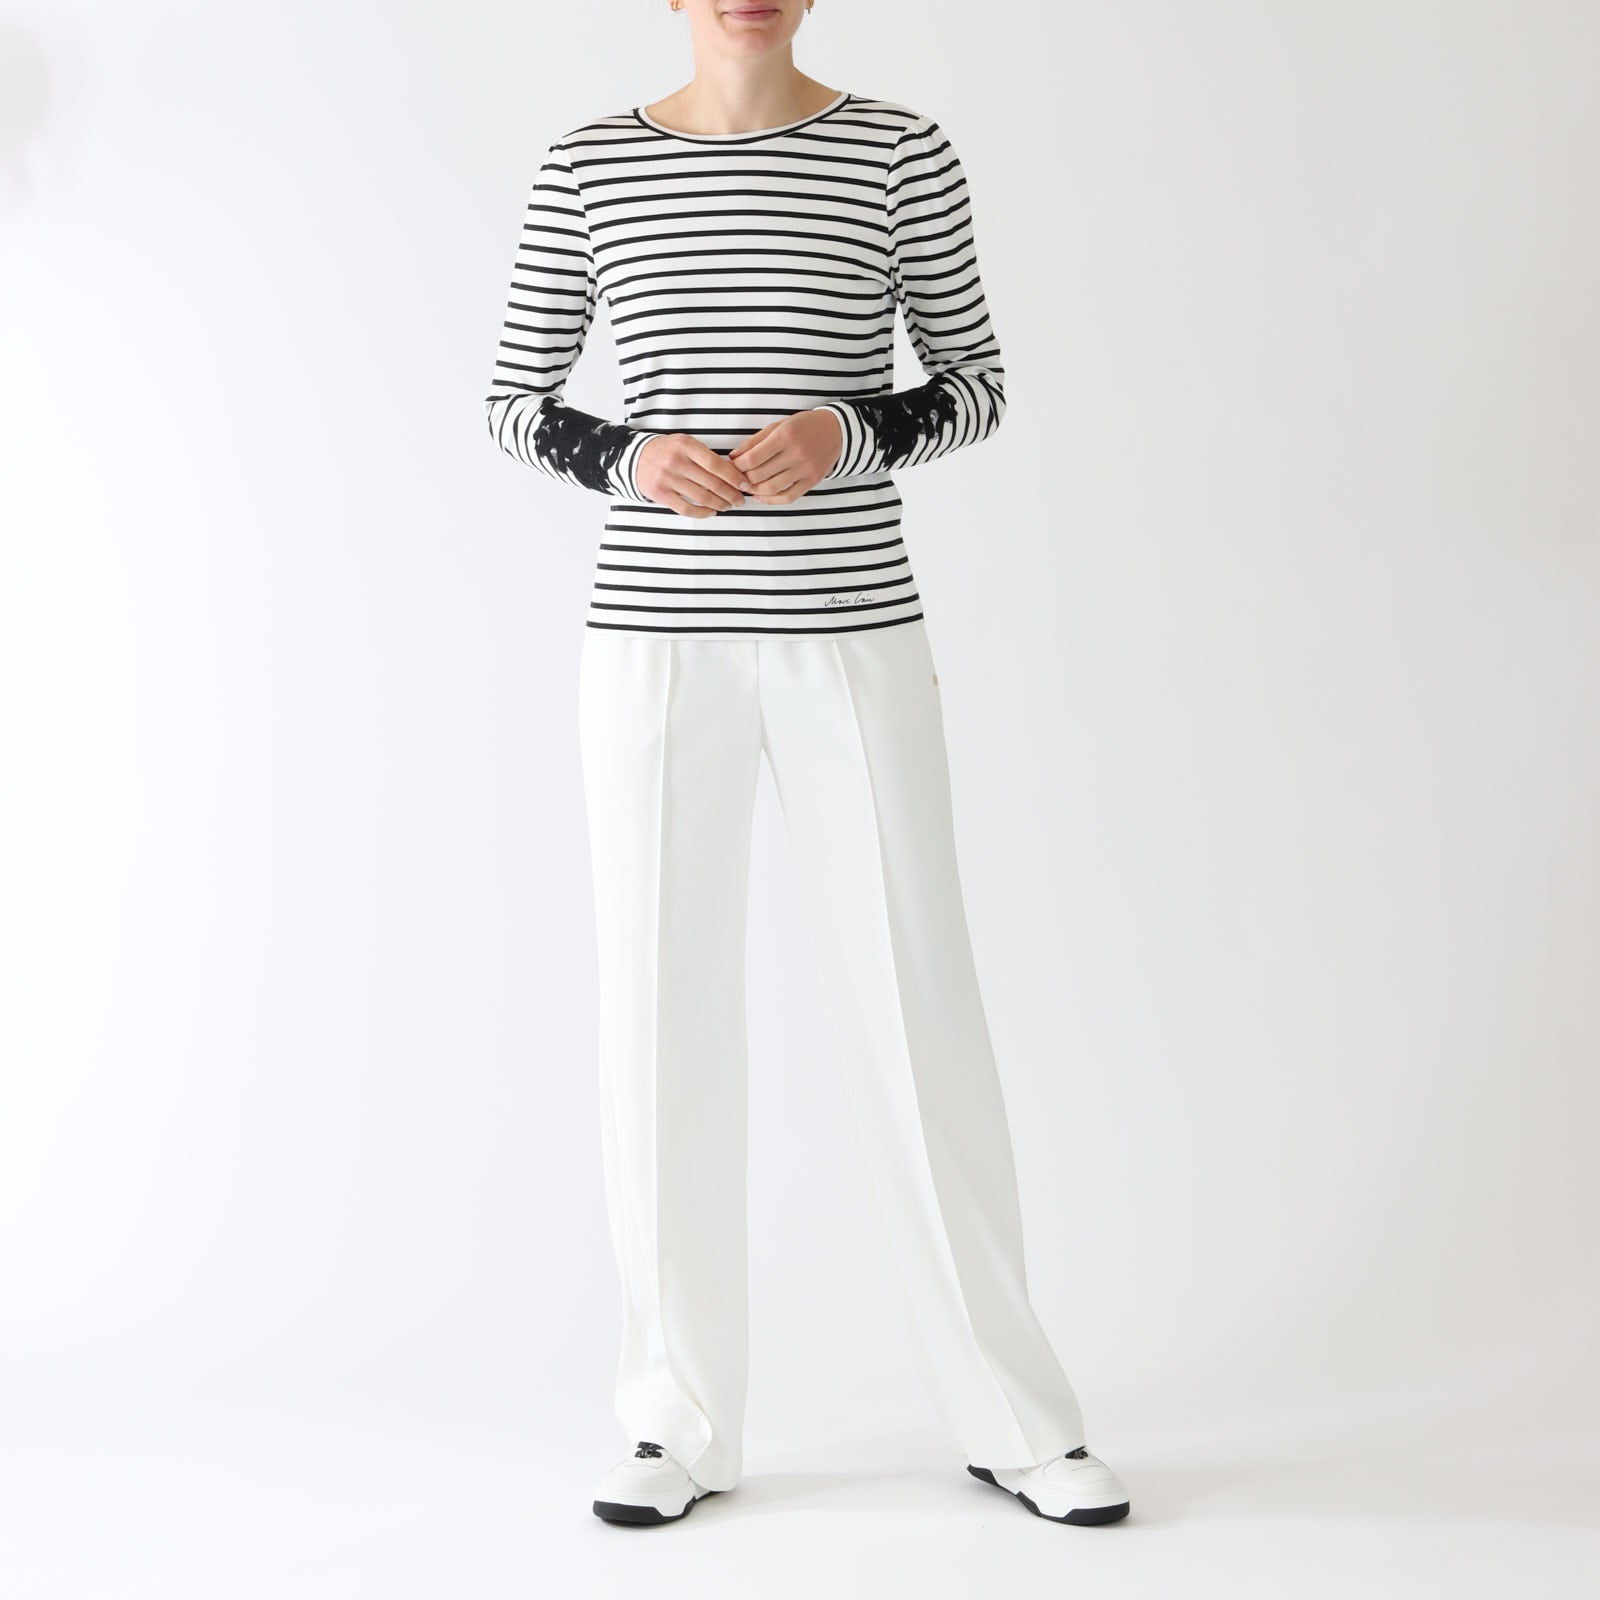 Black & White Striped Long Sleeved T-Shirt